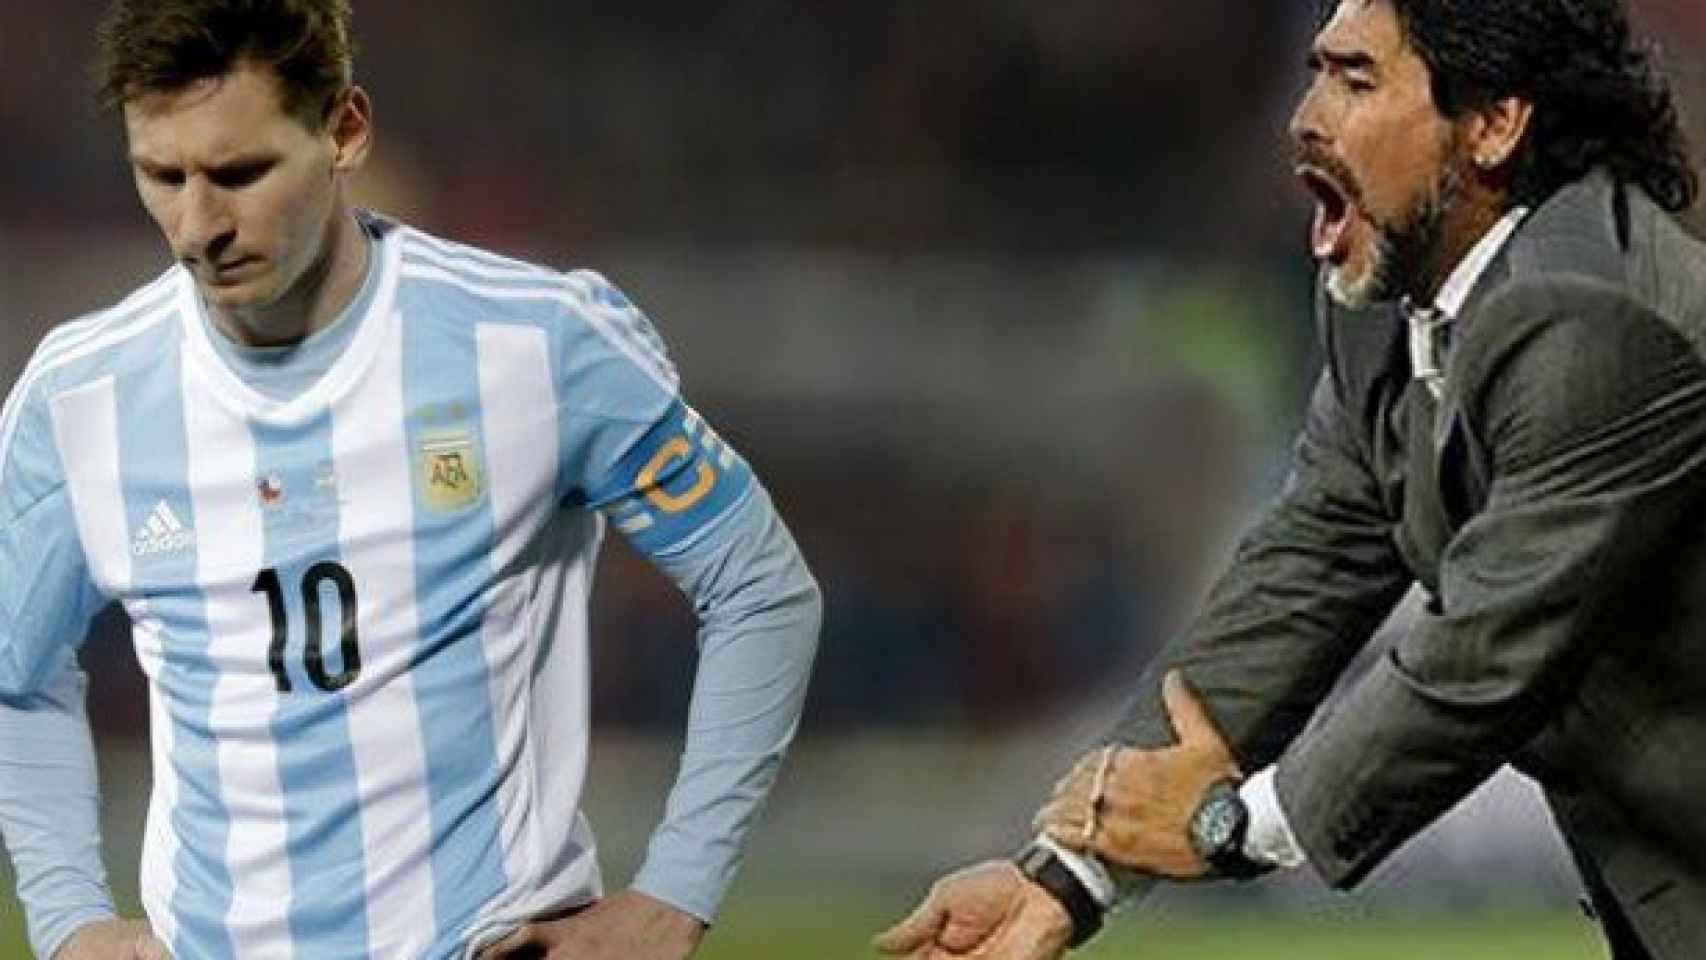 Maradona abroncando a Messi en su etapa como seleccionador / EFE